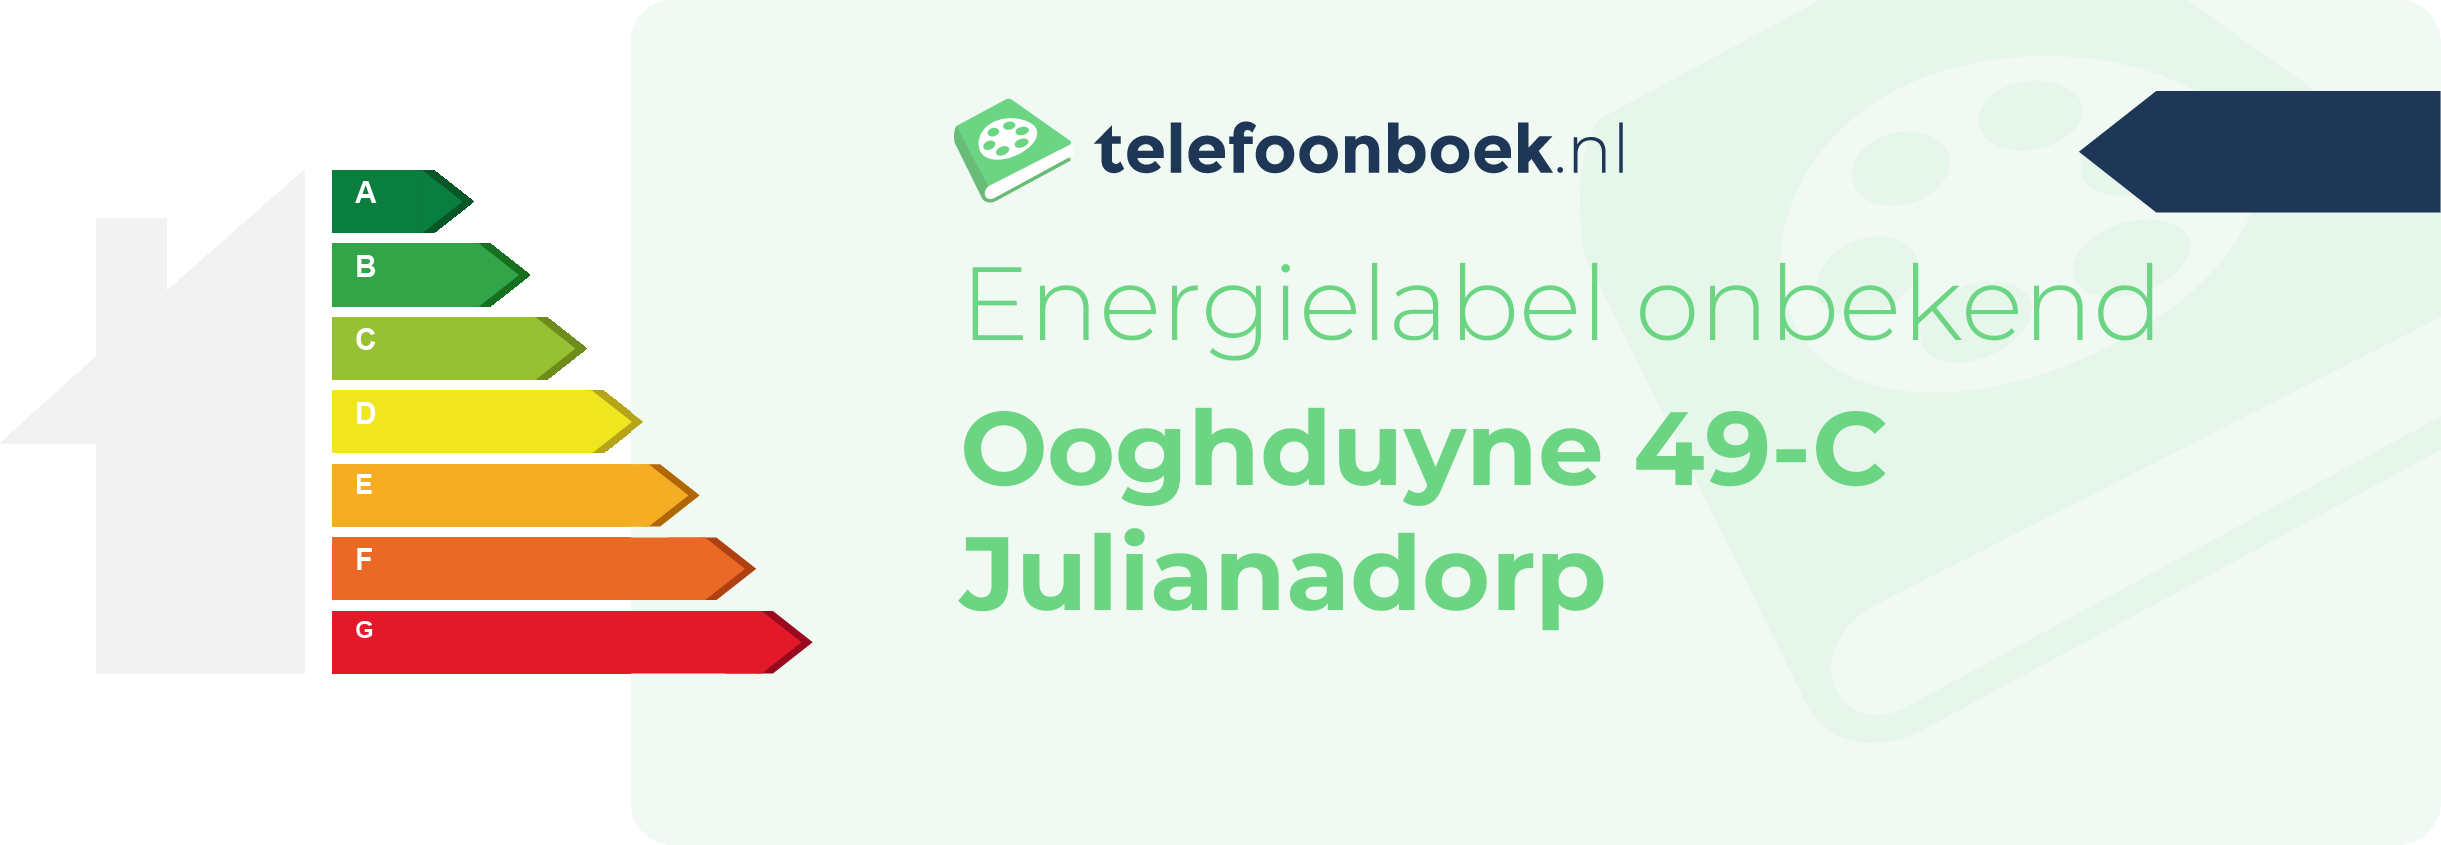 Energielabel Ooghduyne 49-C Julianadorp